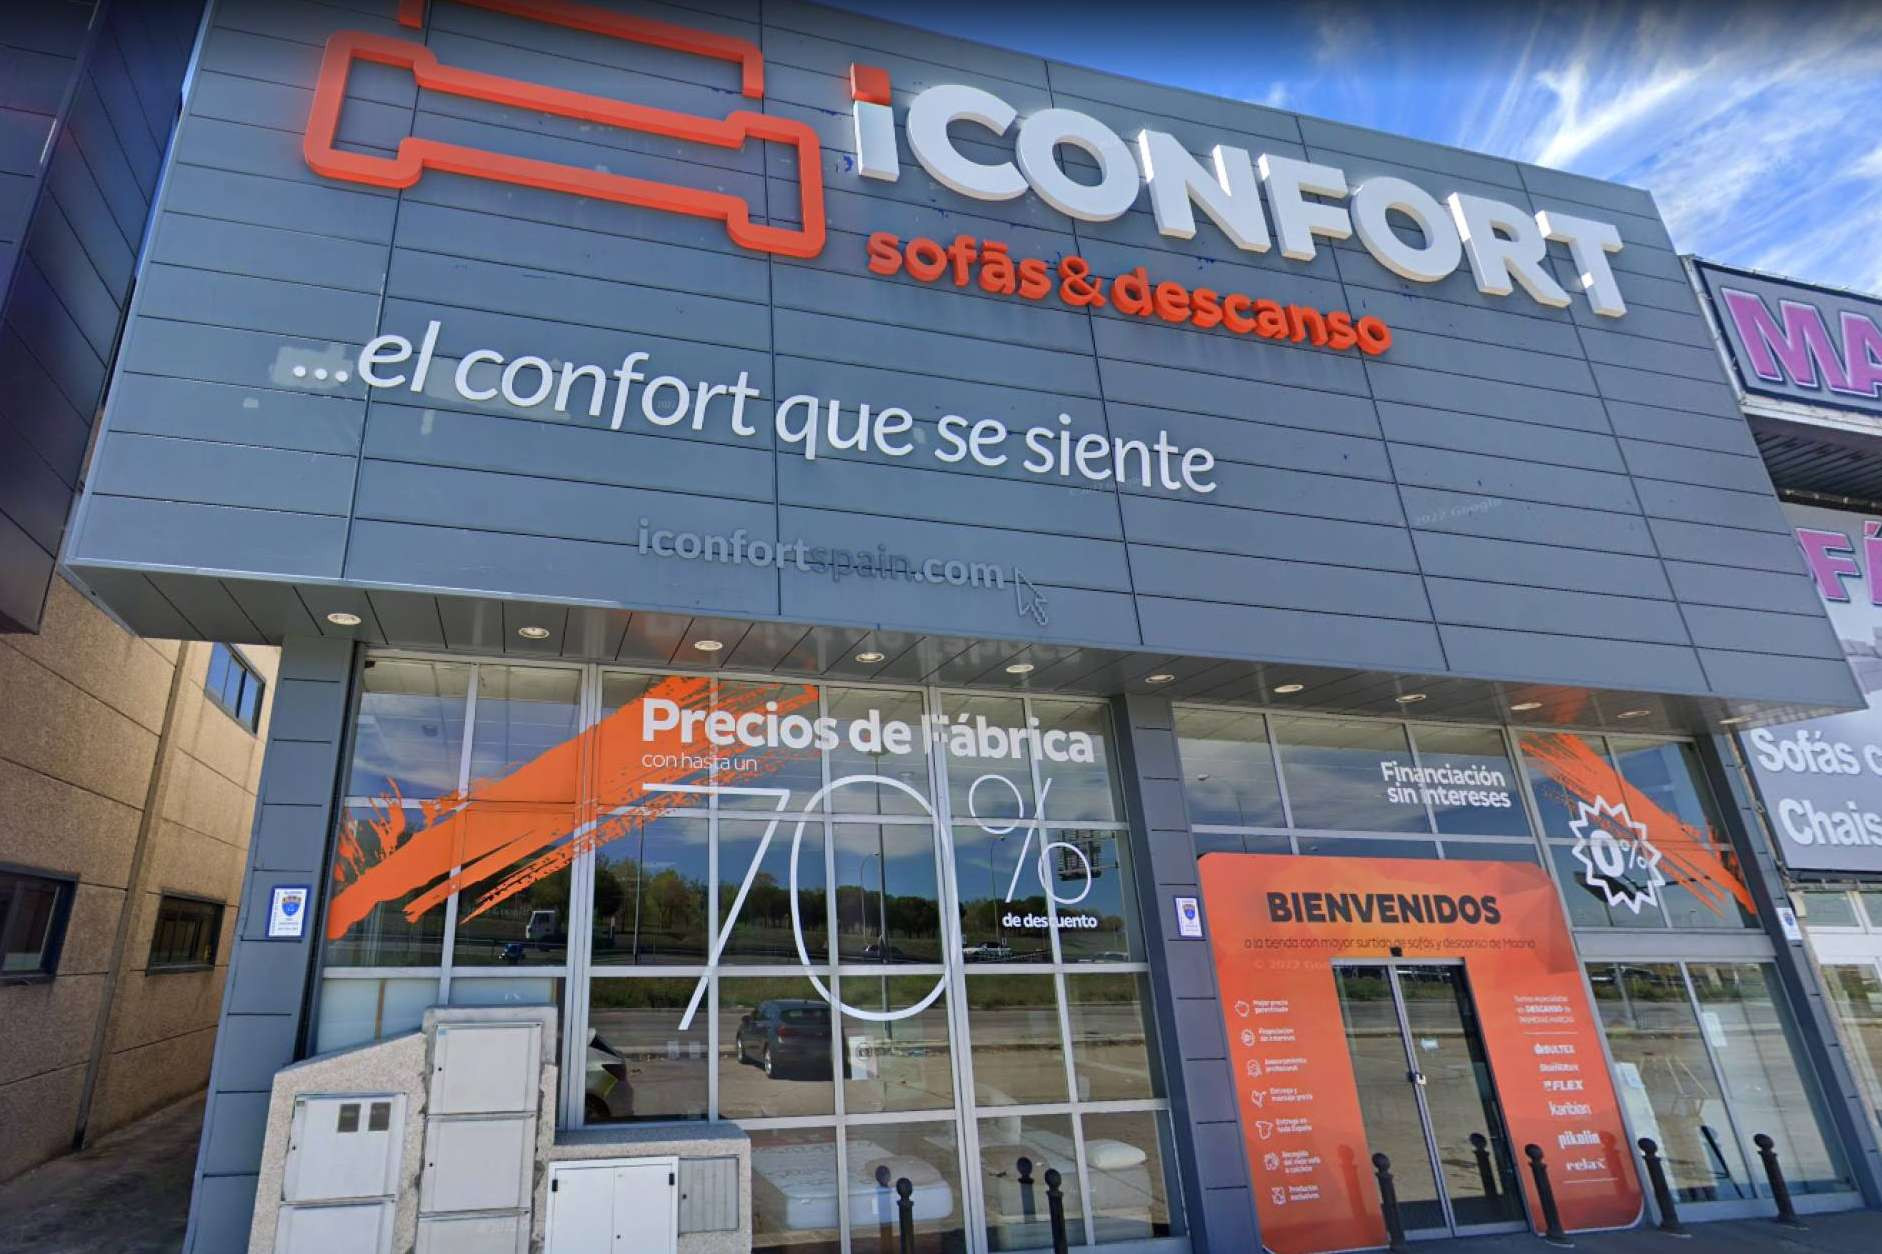  Iconfort, haber crecido como pequeña empresa los ha hecho más competitivos 